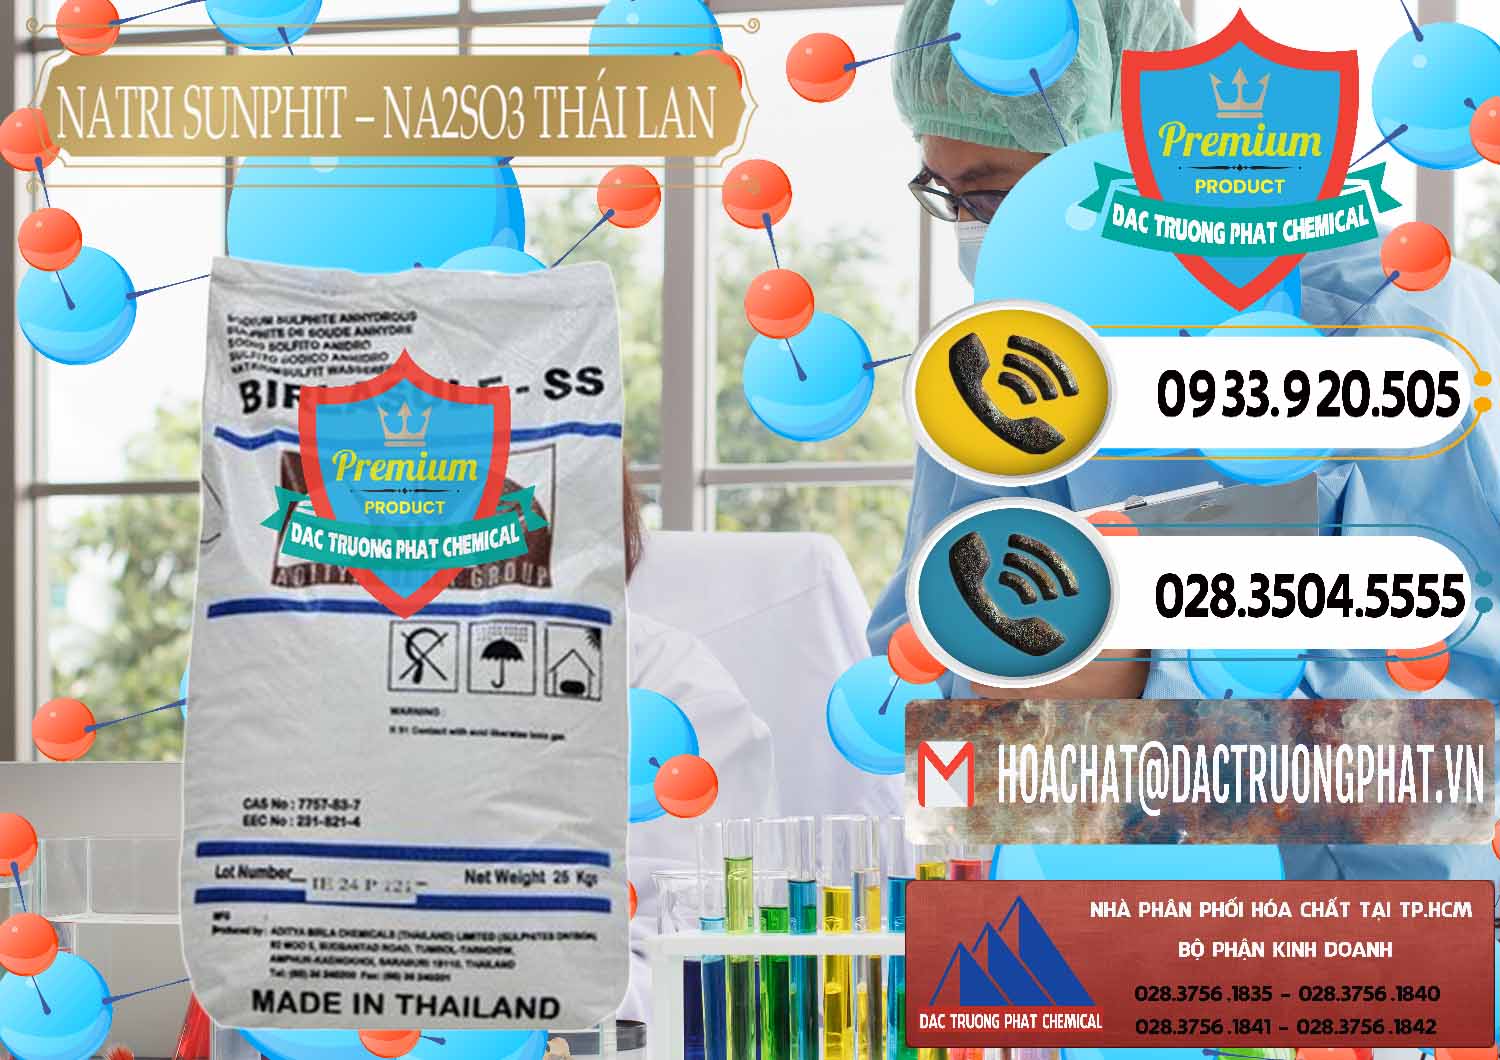 Công ty bán - cung ứng Natri Sunphit - NA2SO3 Thái Lan - 0105 - Nhà cung cấp & bán hóa chất tại TP.HCM - hoachatdetnhuom.vn